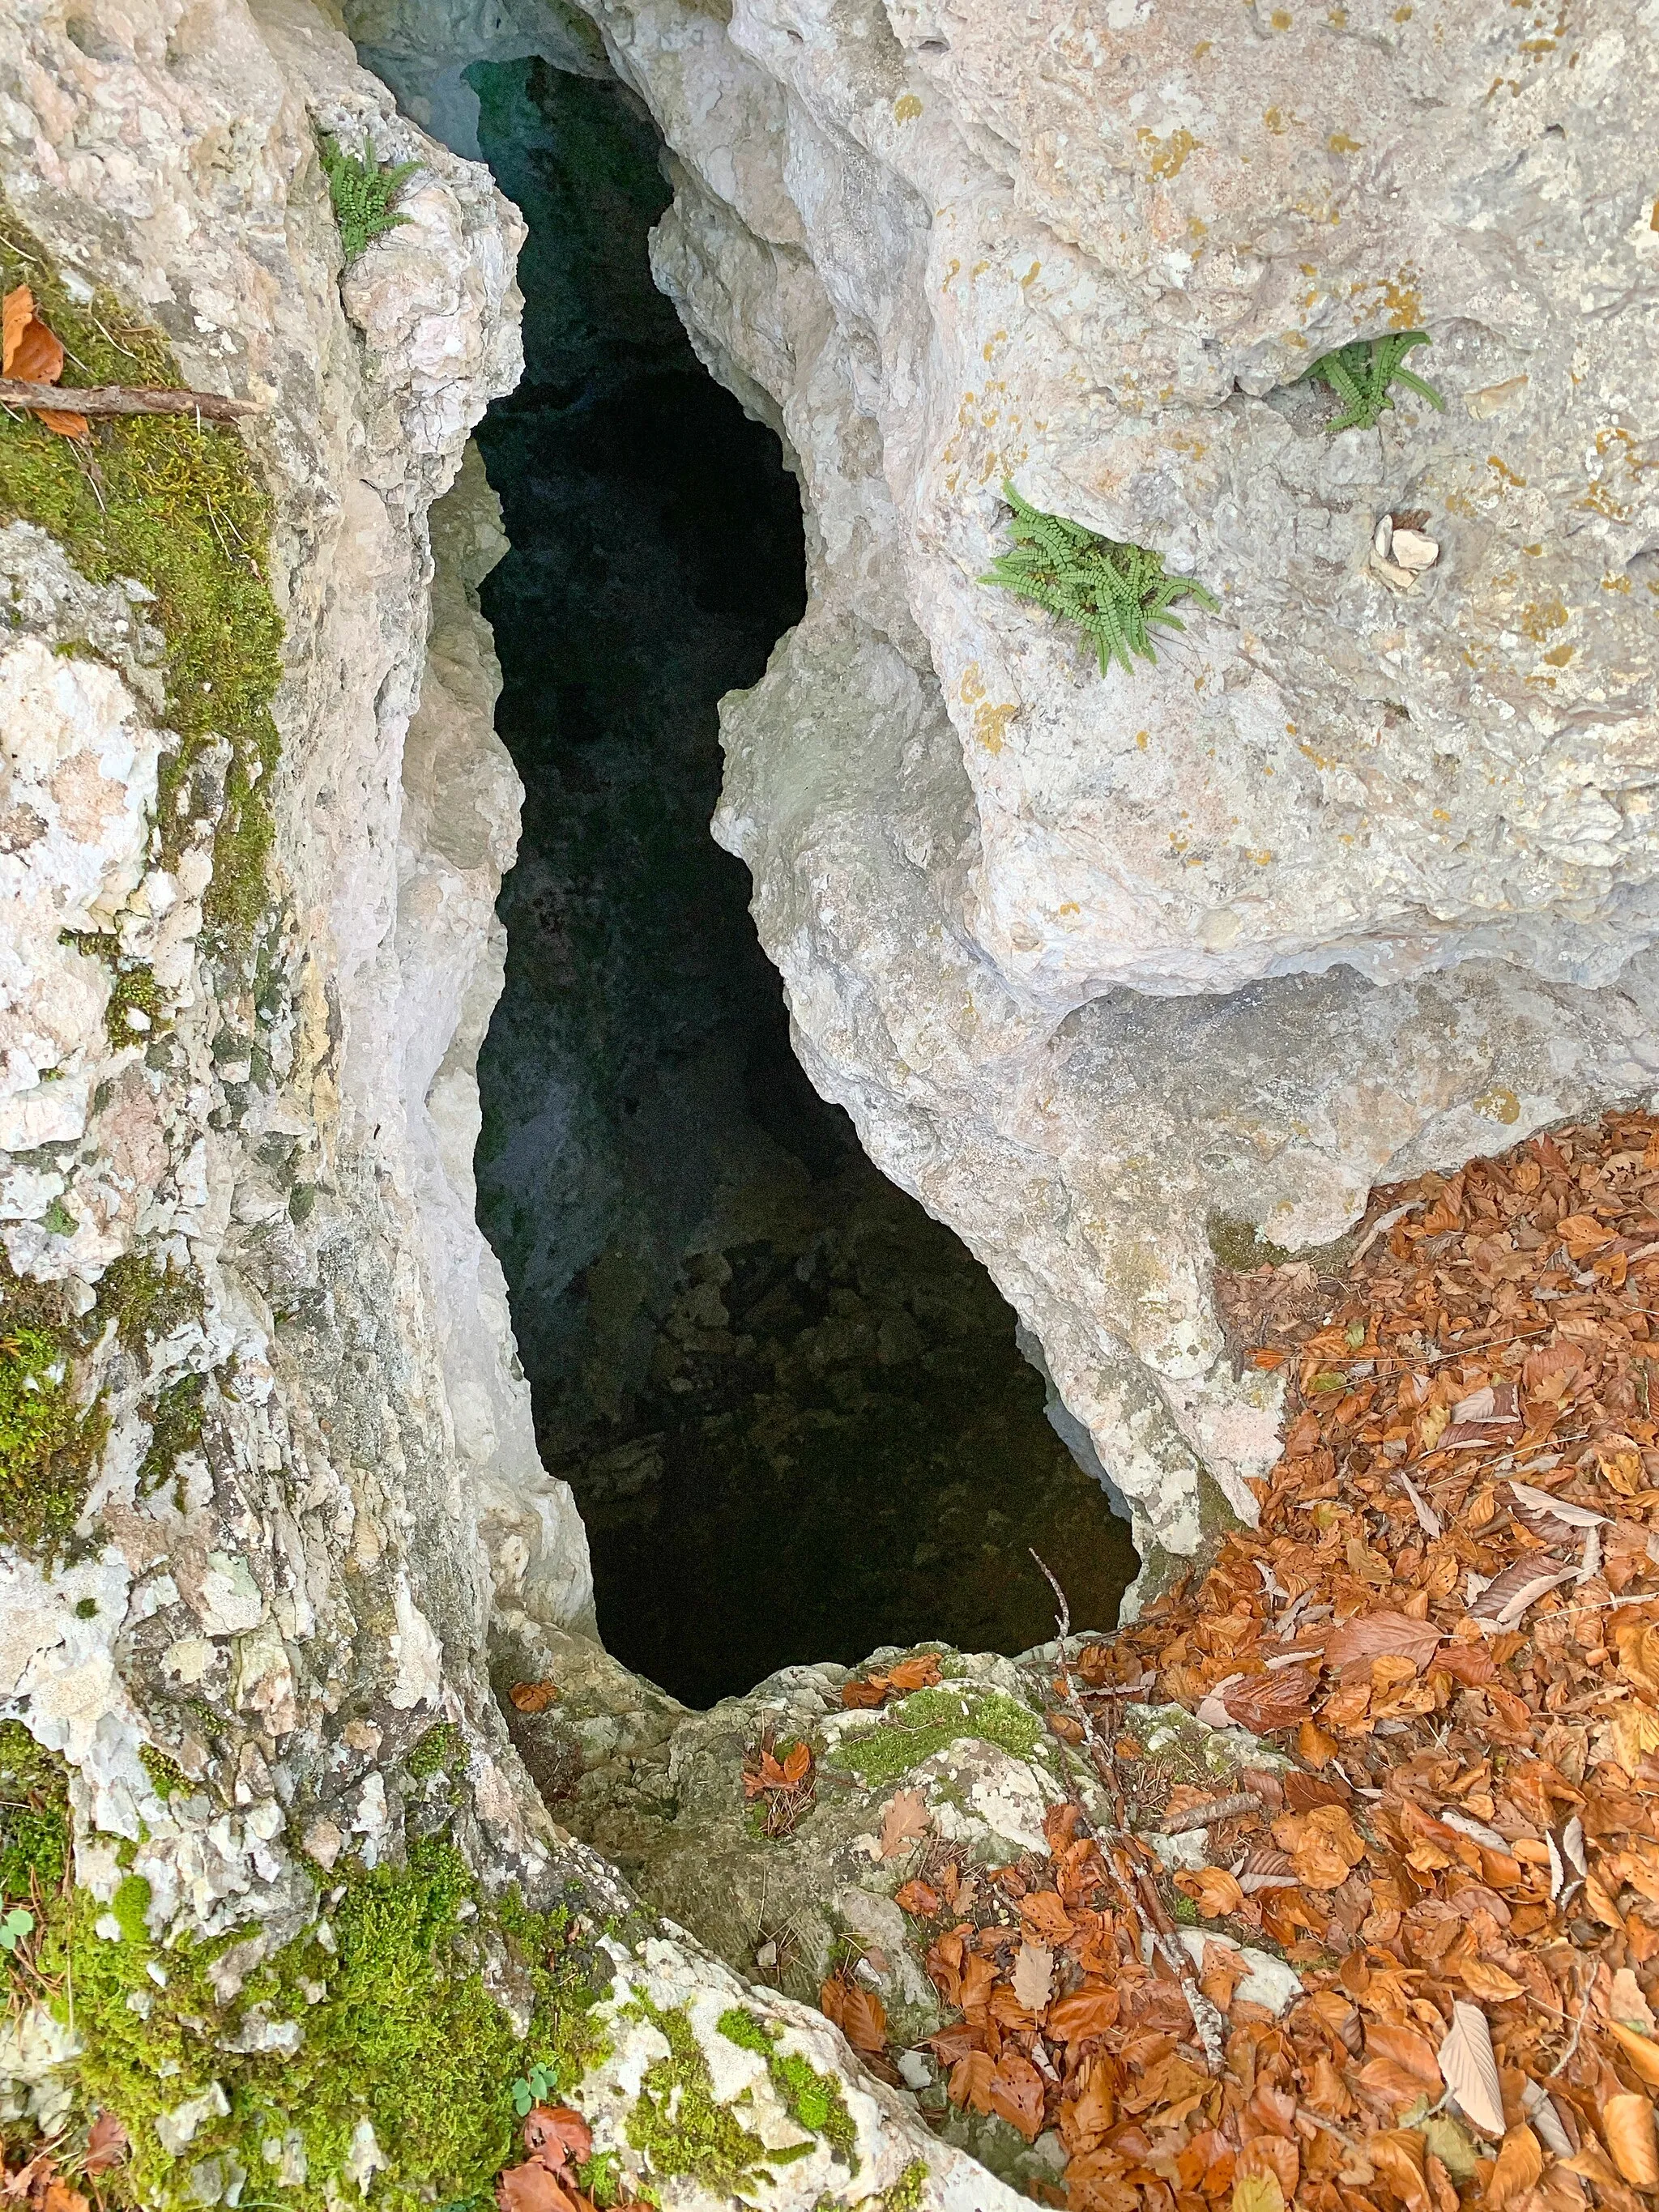 Photo showing: Der Roc de Courroux besteht aus Kalk, Wasser löst Material aus, der Berg ist mit kleinen und grösseren Löchern durchsetzt.